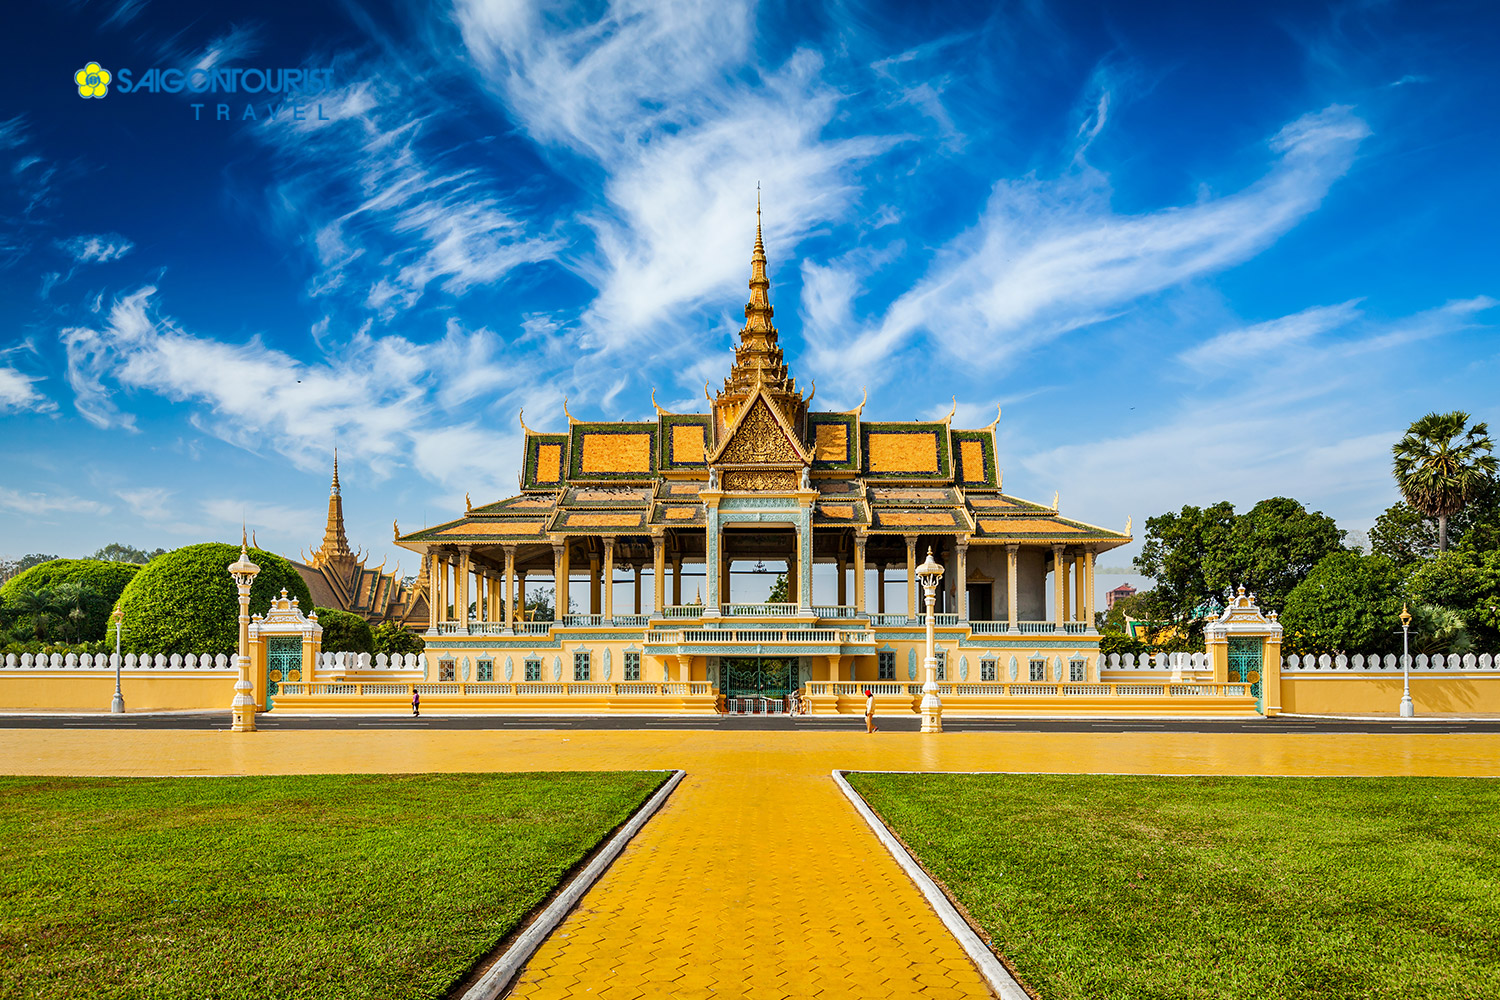 Du lịch Campuchia: THIÊN ĐƯỜNG BIỂN KEP – CHÙA PUTH KIRI – THỦ ĐÔ PHNOM PENH - Khởi hành từ Cần Thơ